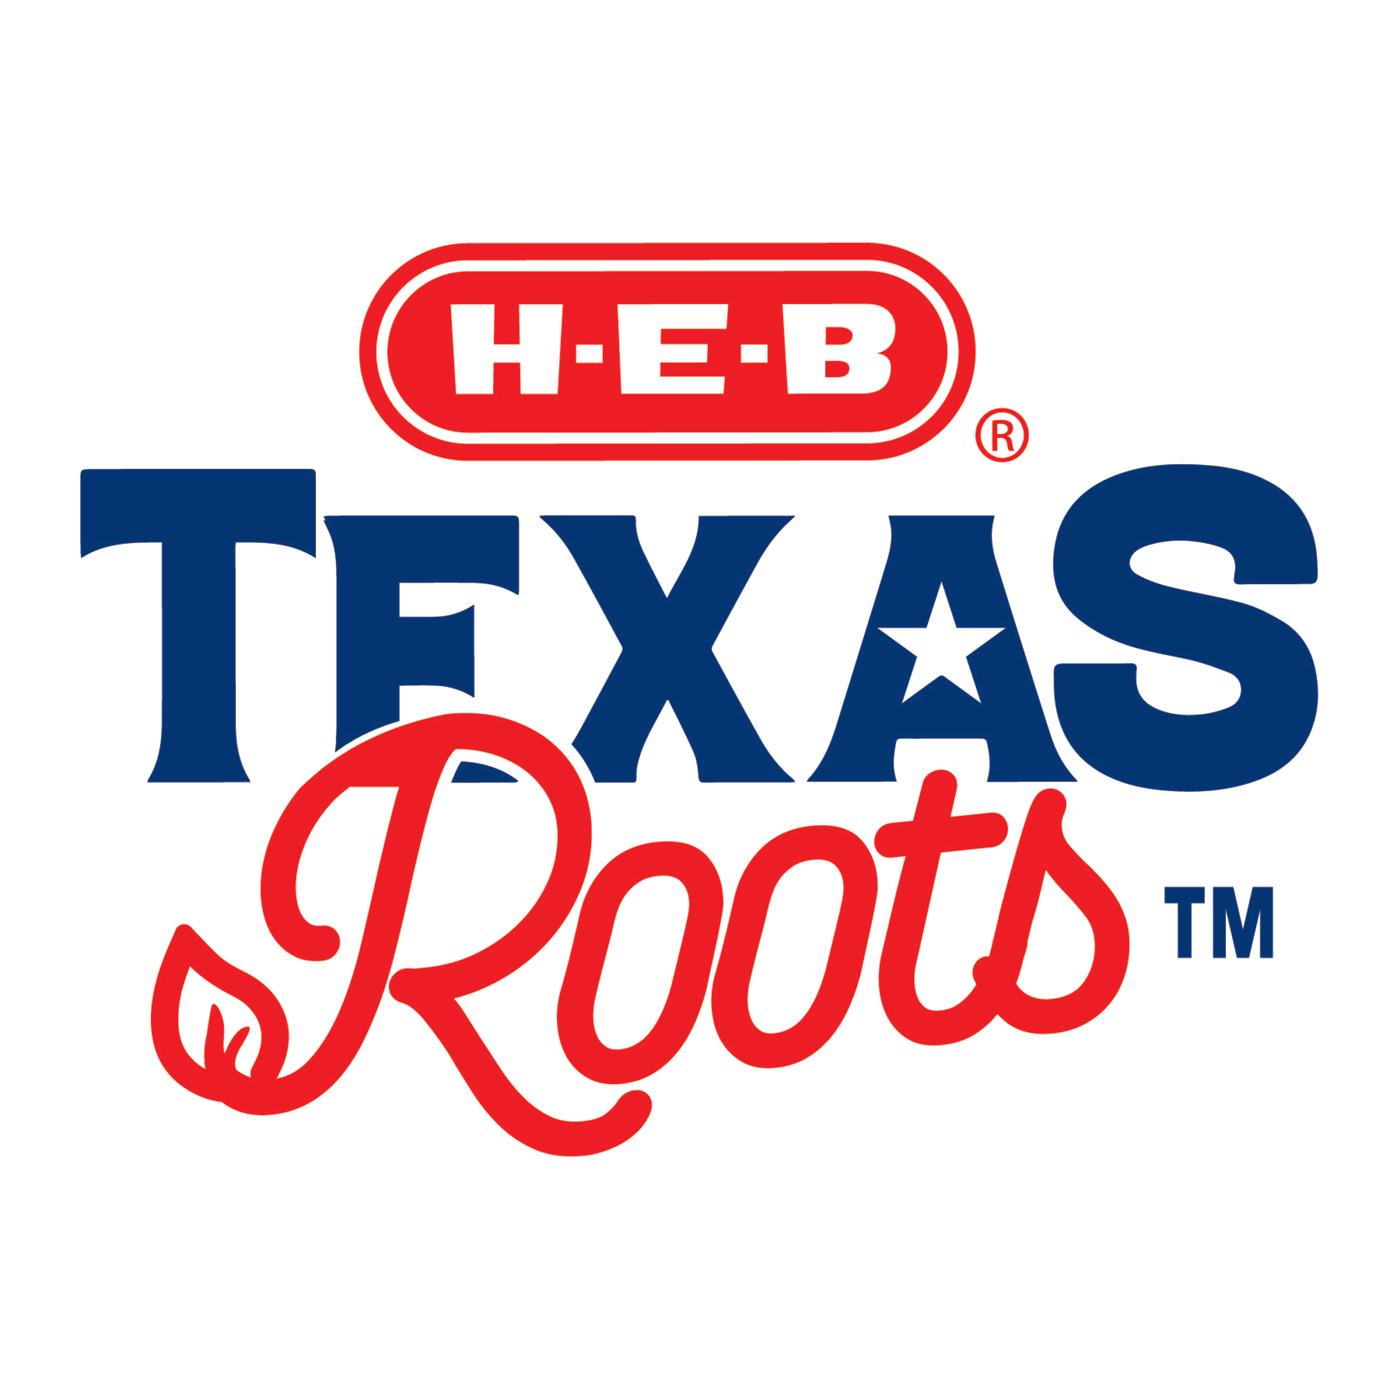 H-E-B Texas Roots Tecoma; image 2 of 3